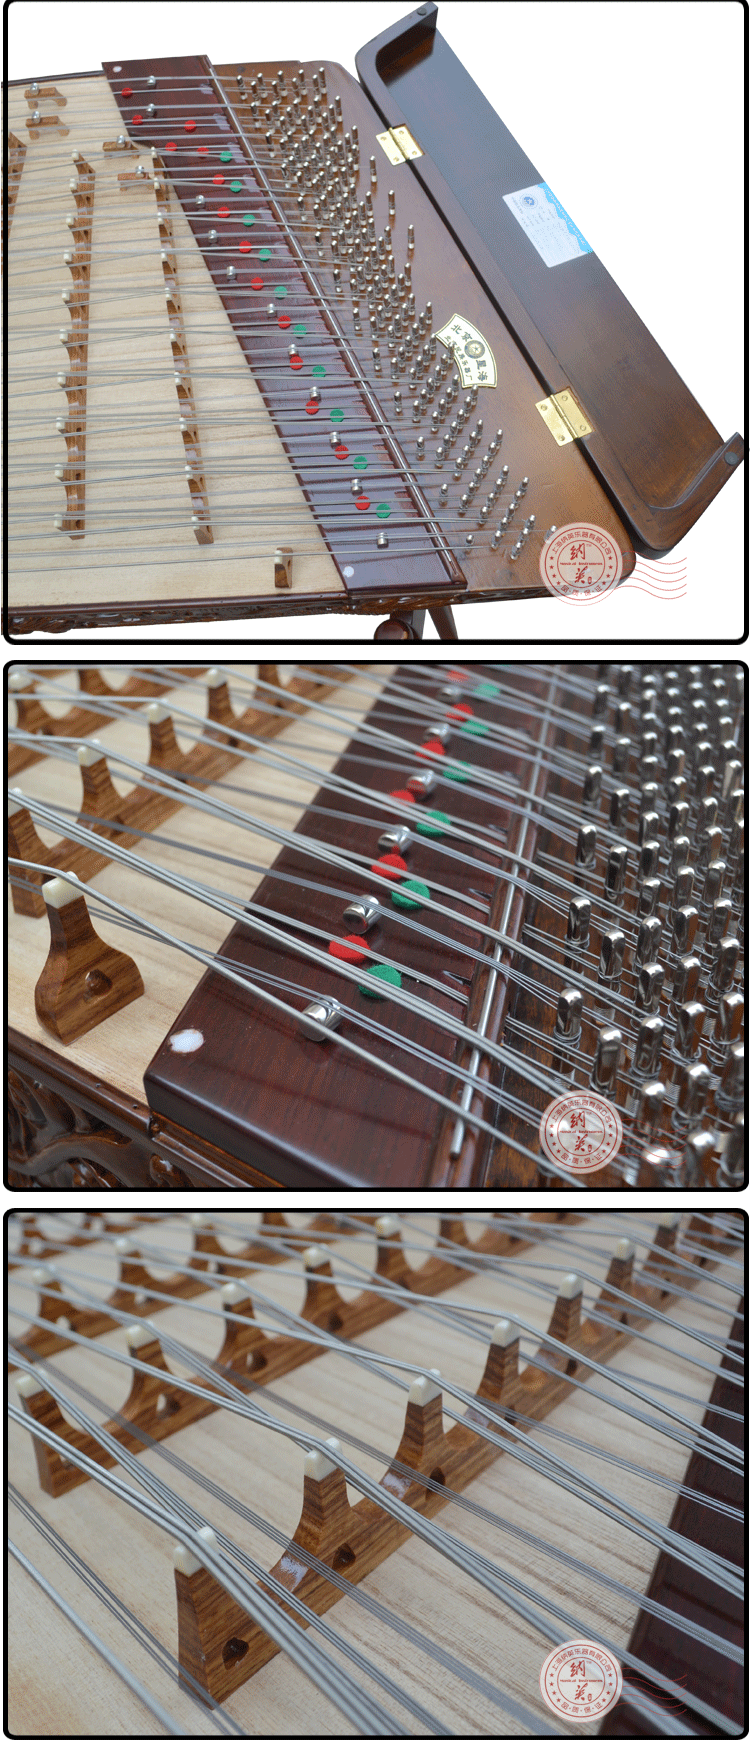 纳英现货直销 北京星海正品牌精品楠木浮雕龙扬琴乐器